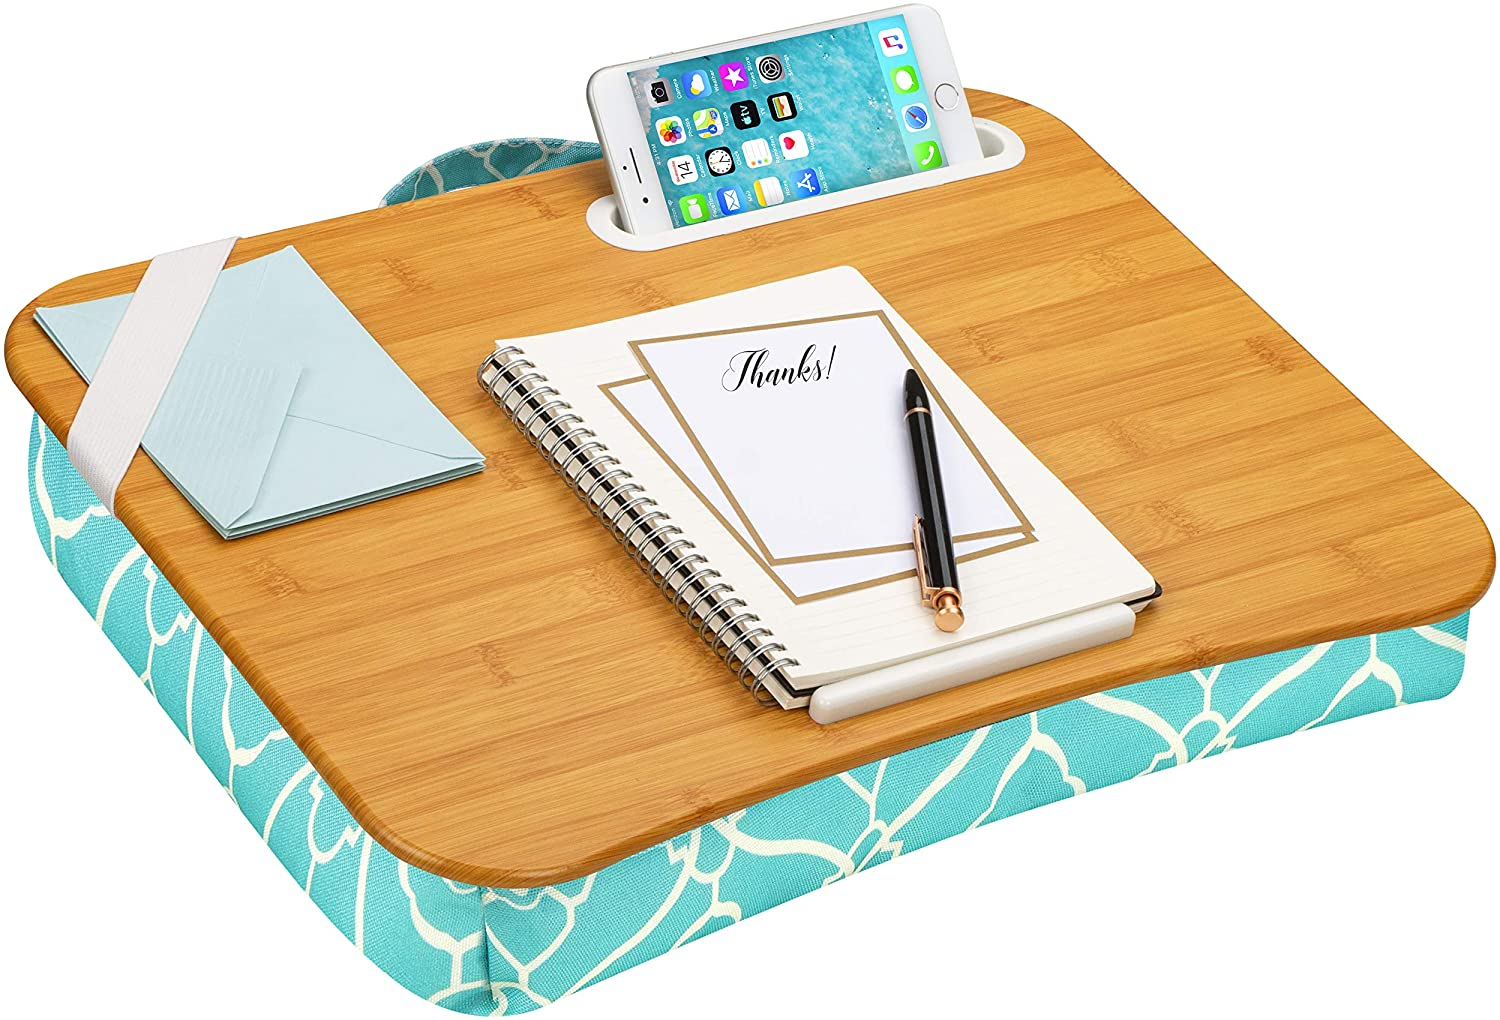 Custom Wood Lap Desk von maßgeschneidert zu perfektioniert für Ihre Bedürfnisse